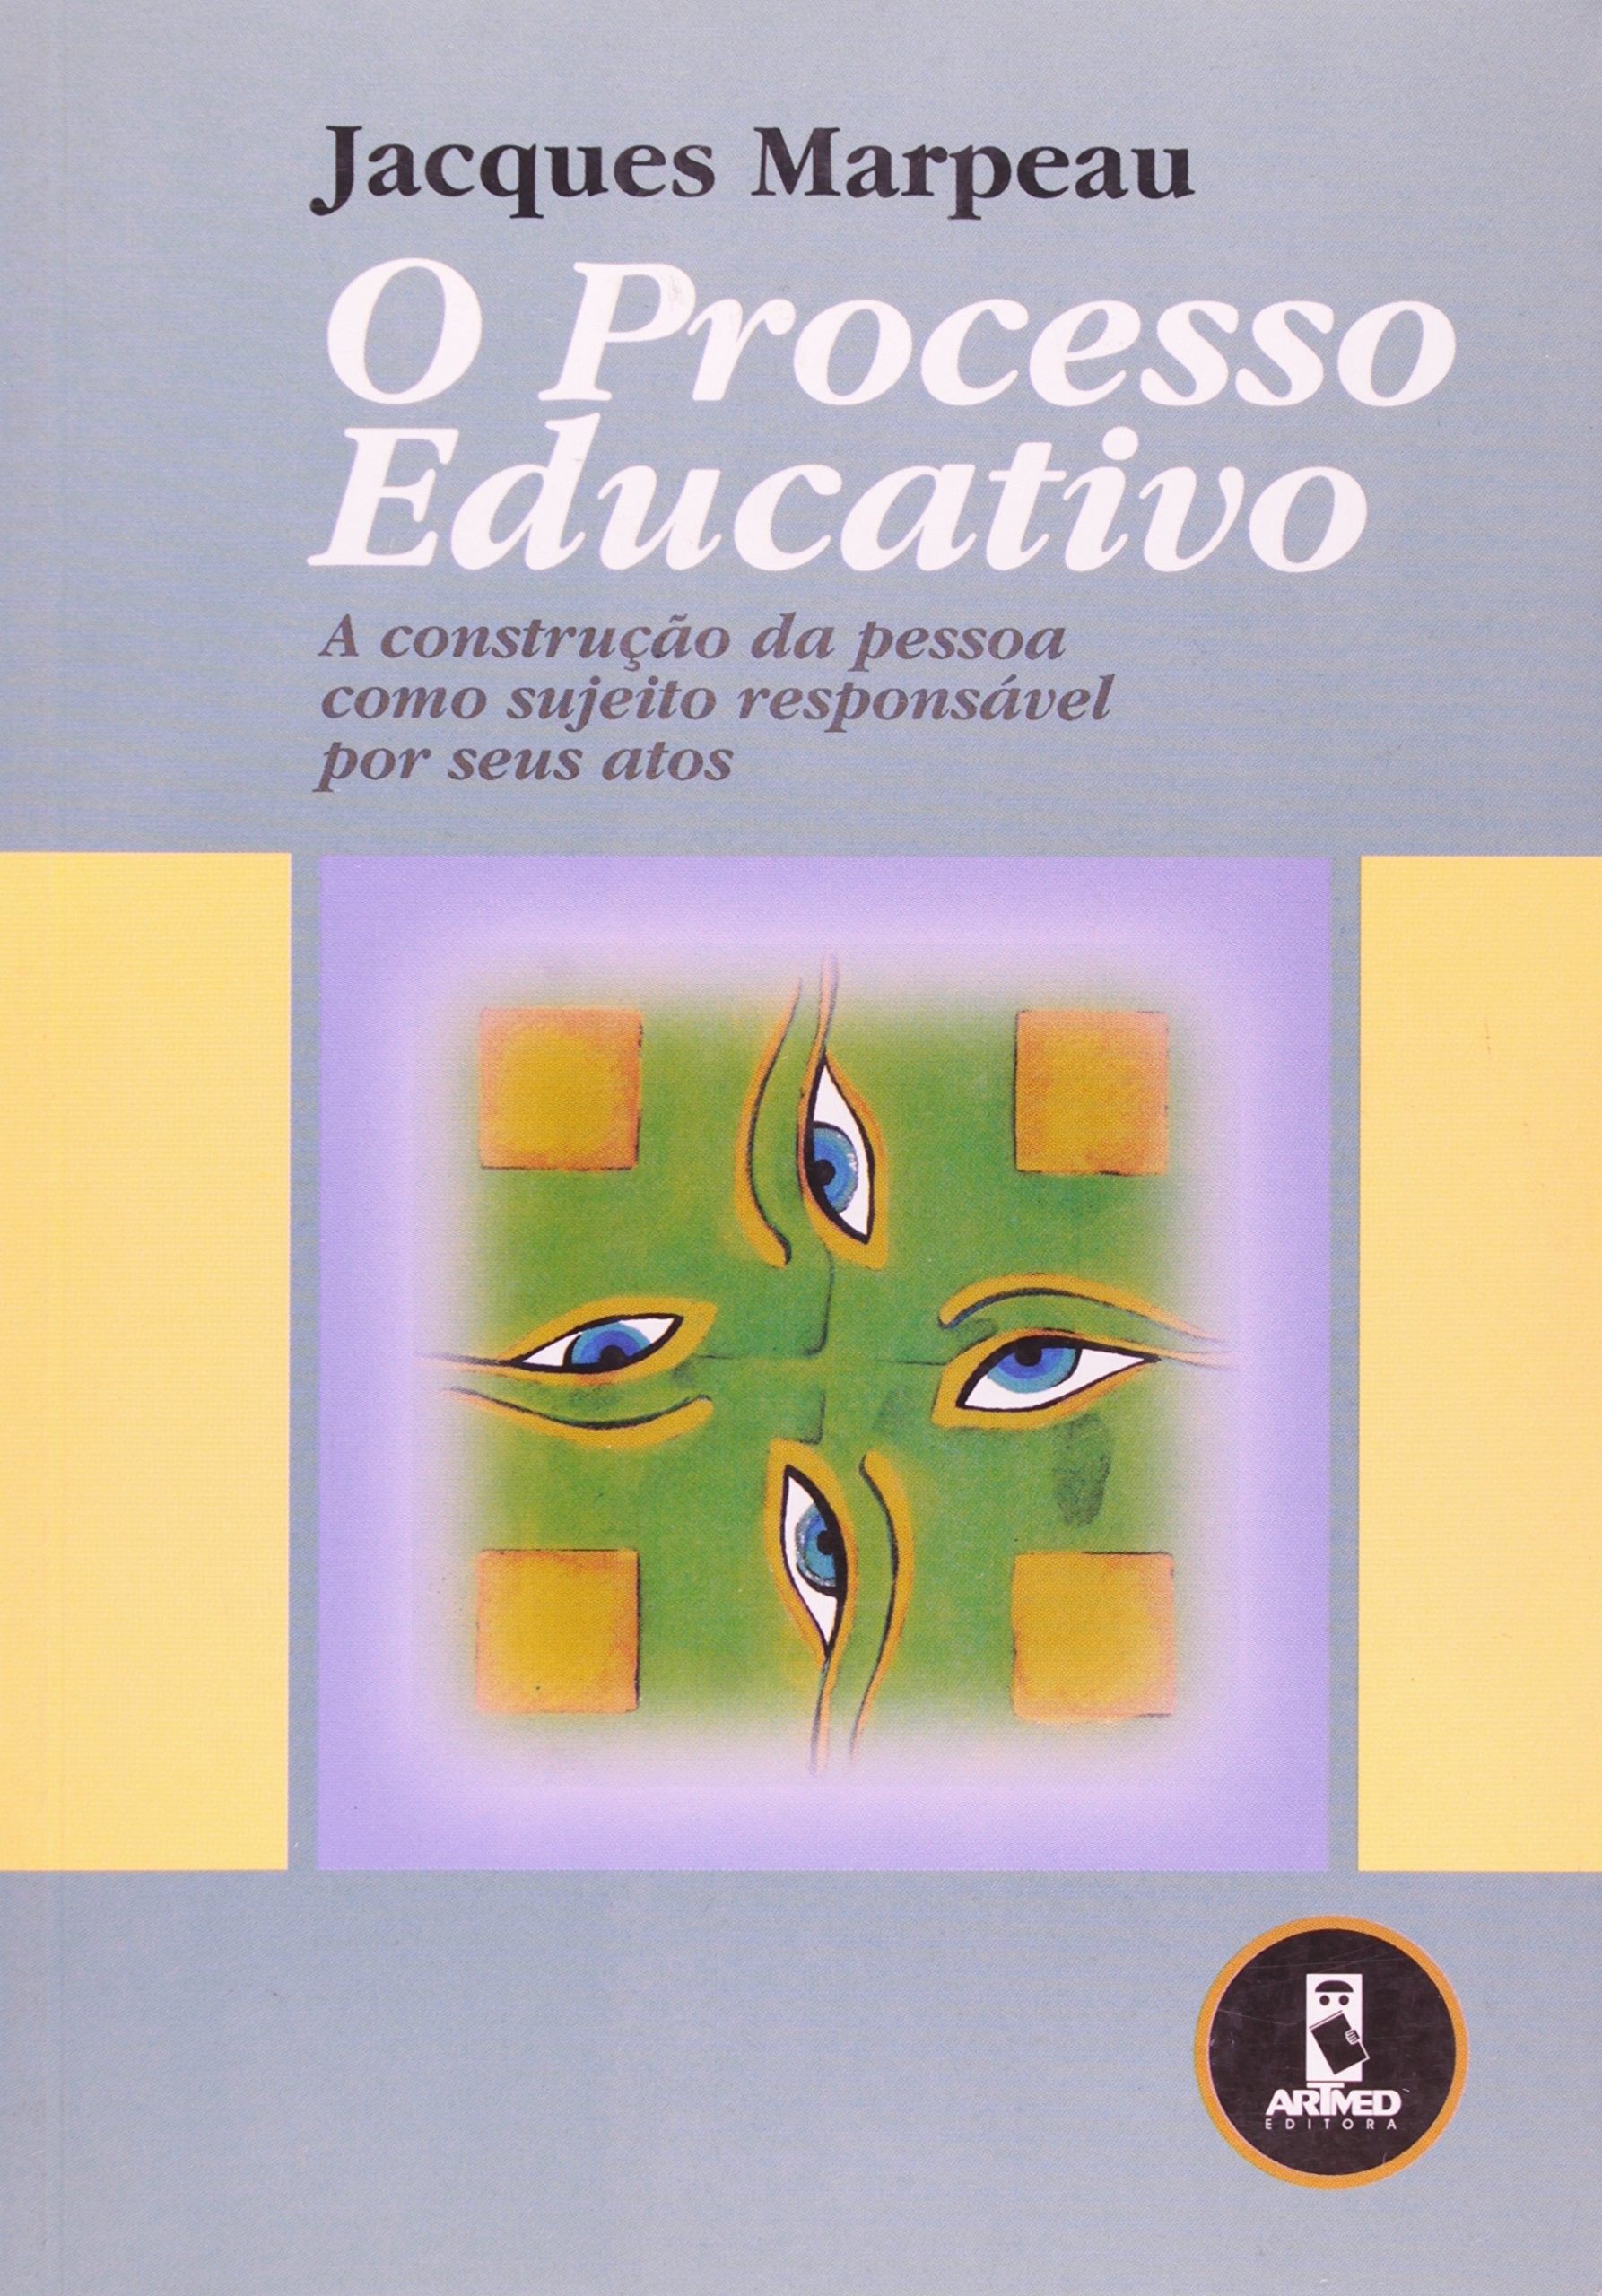 Processo Educativo, O - A Construção da Pessoa como Sujeito Responsável por Seus Atos